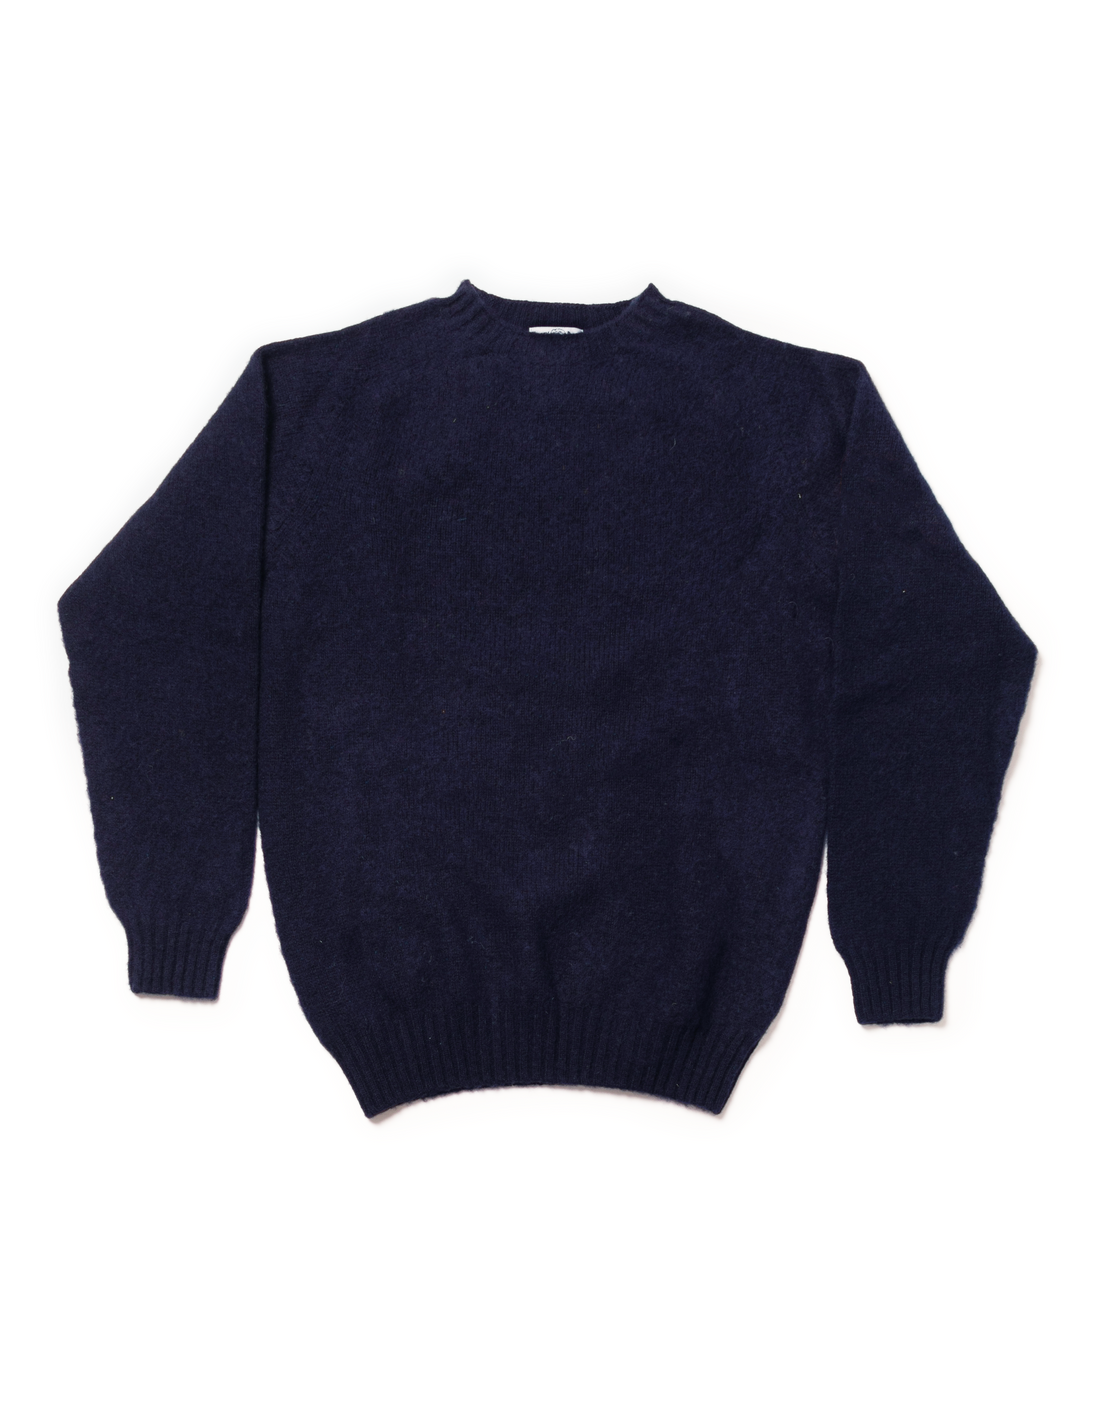 Shaggy Dog Sweater Navy - Trim Fit | Men's Sweaters - J. Press – J. PRESS